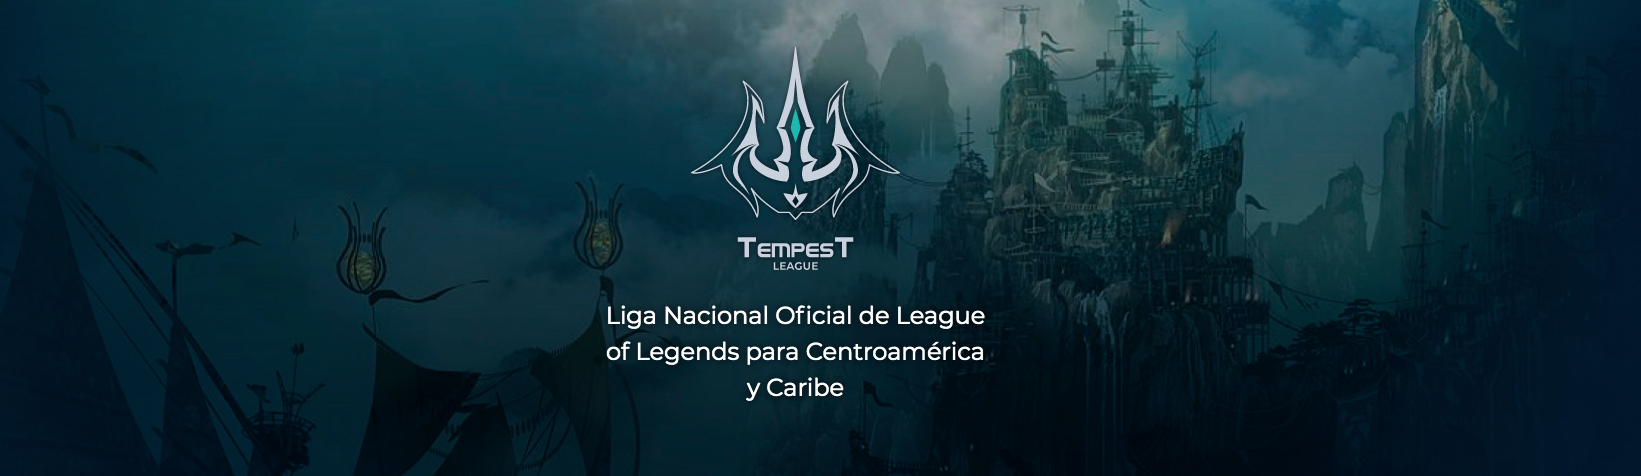 Tempest League